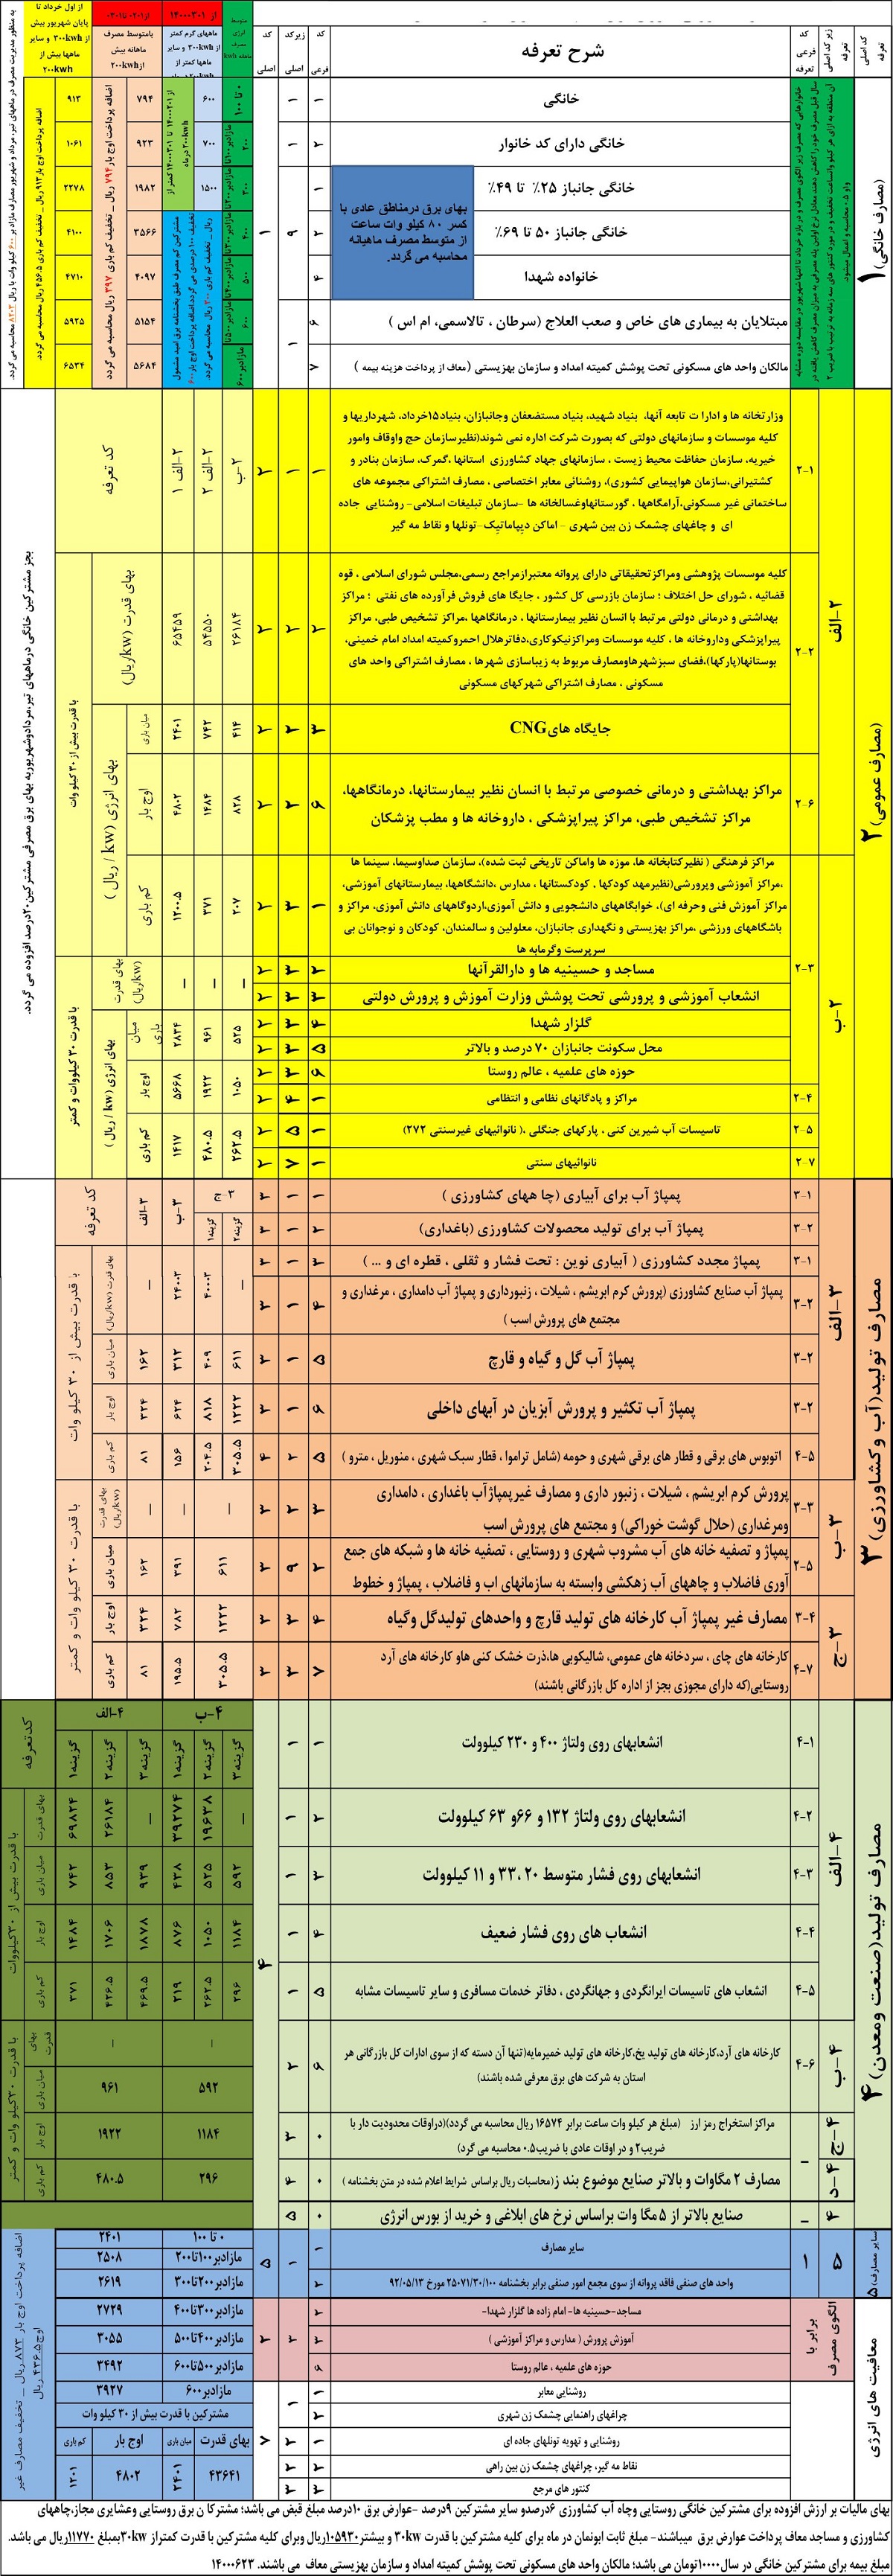 قیمت برق خانگی در ایران